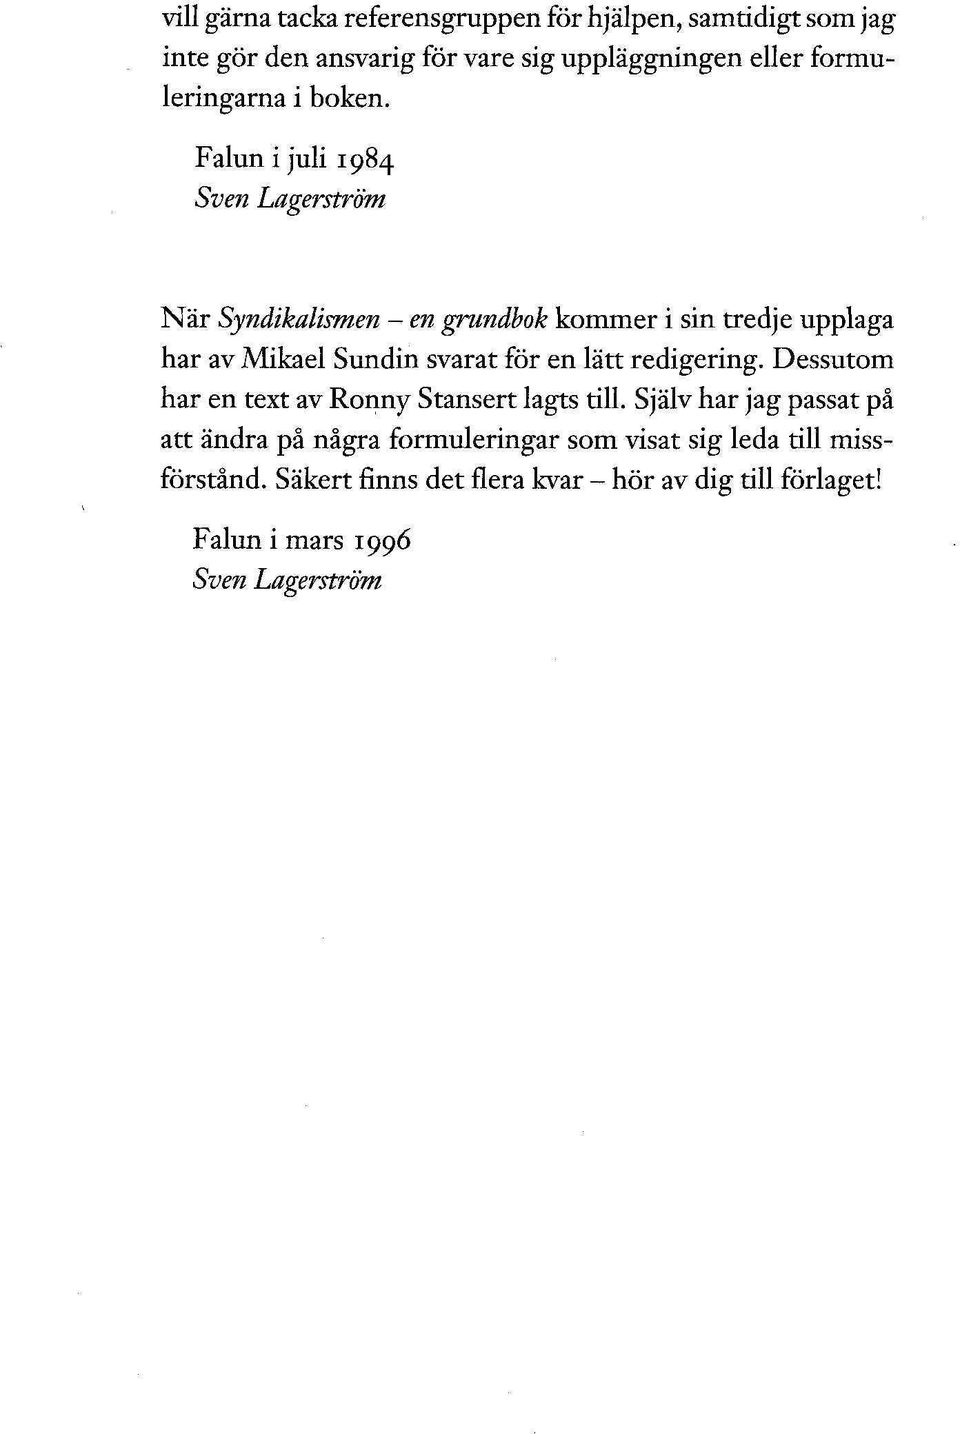 Falun i juli 1984 Sven Lagerström När Syndikalismen - en grundbok kommer i sin tredje upplaga har av Mikael Sundin svarat för en